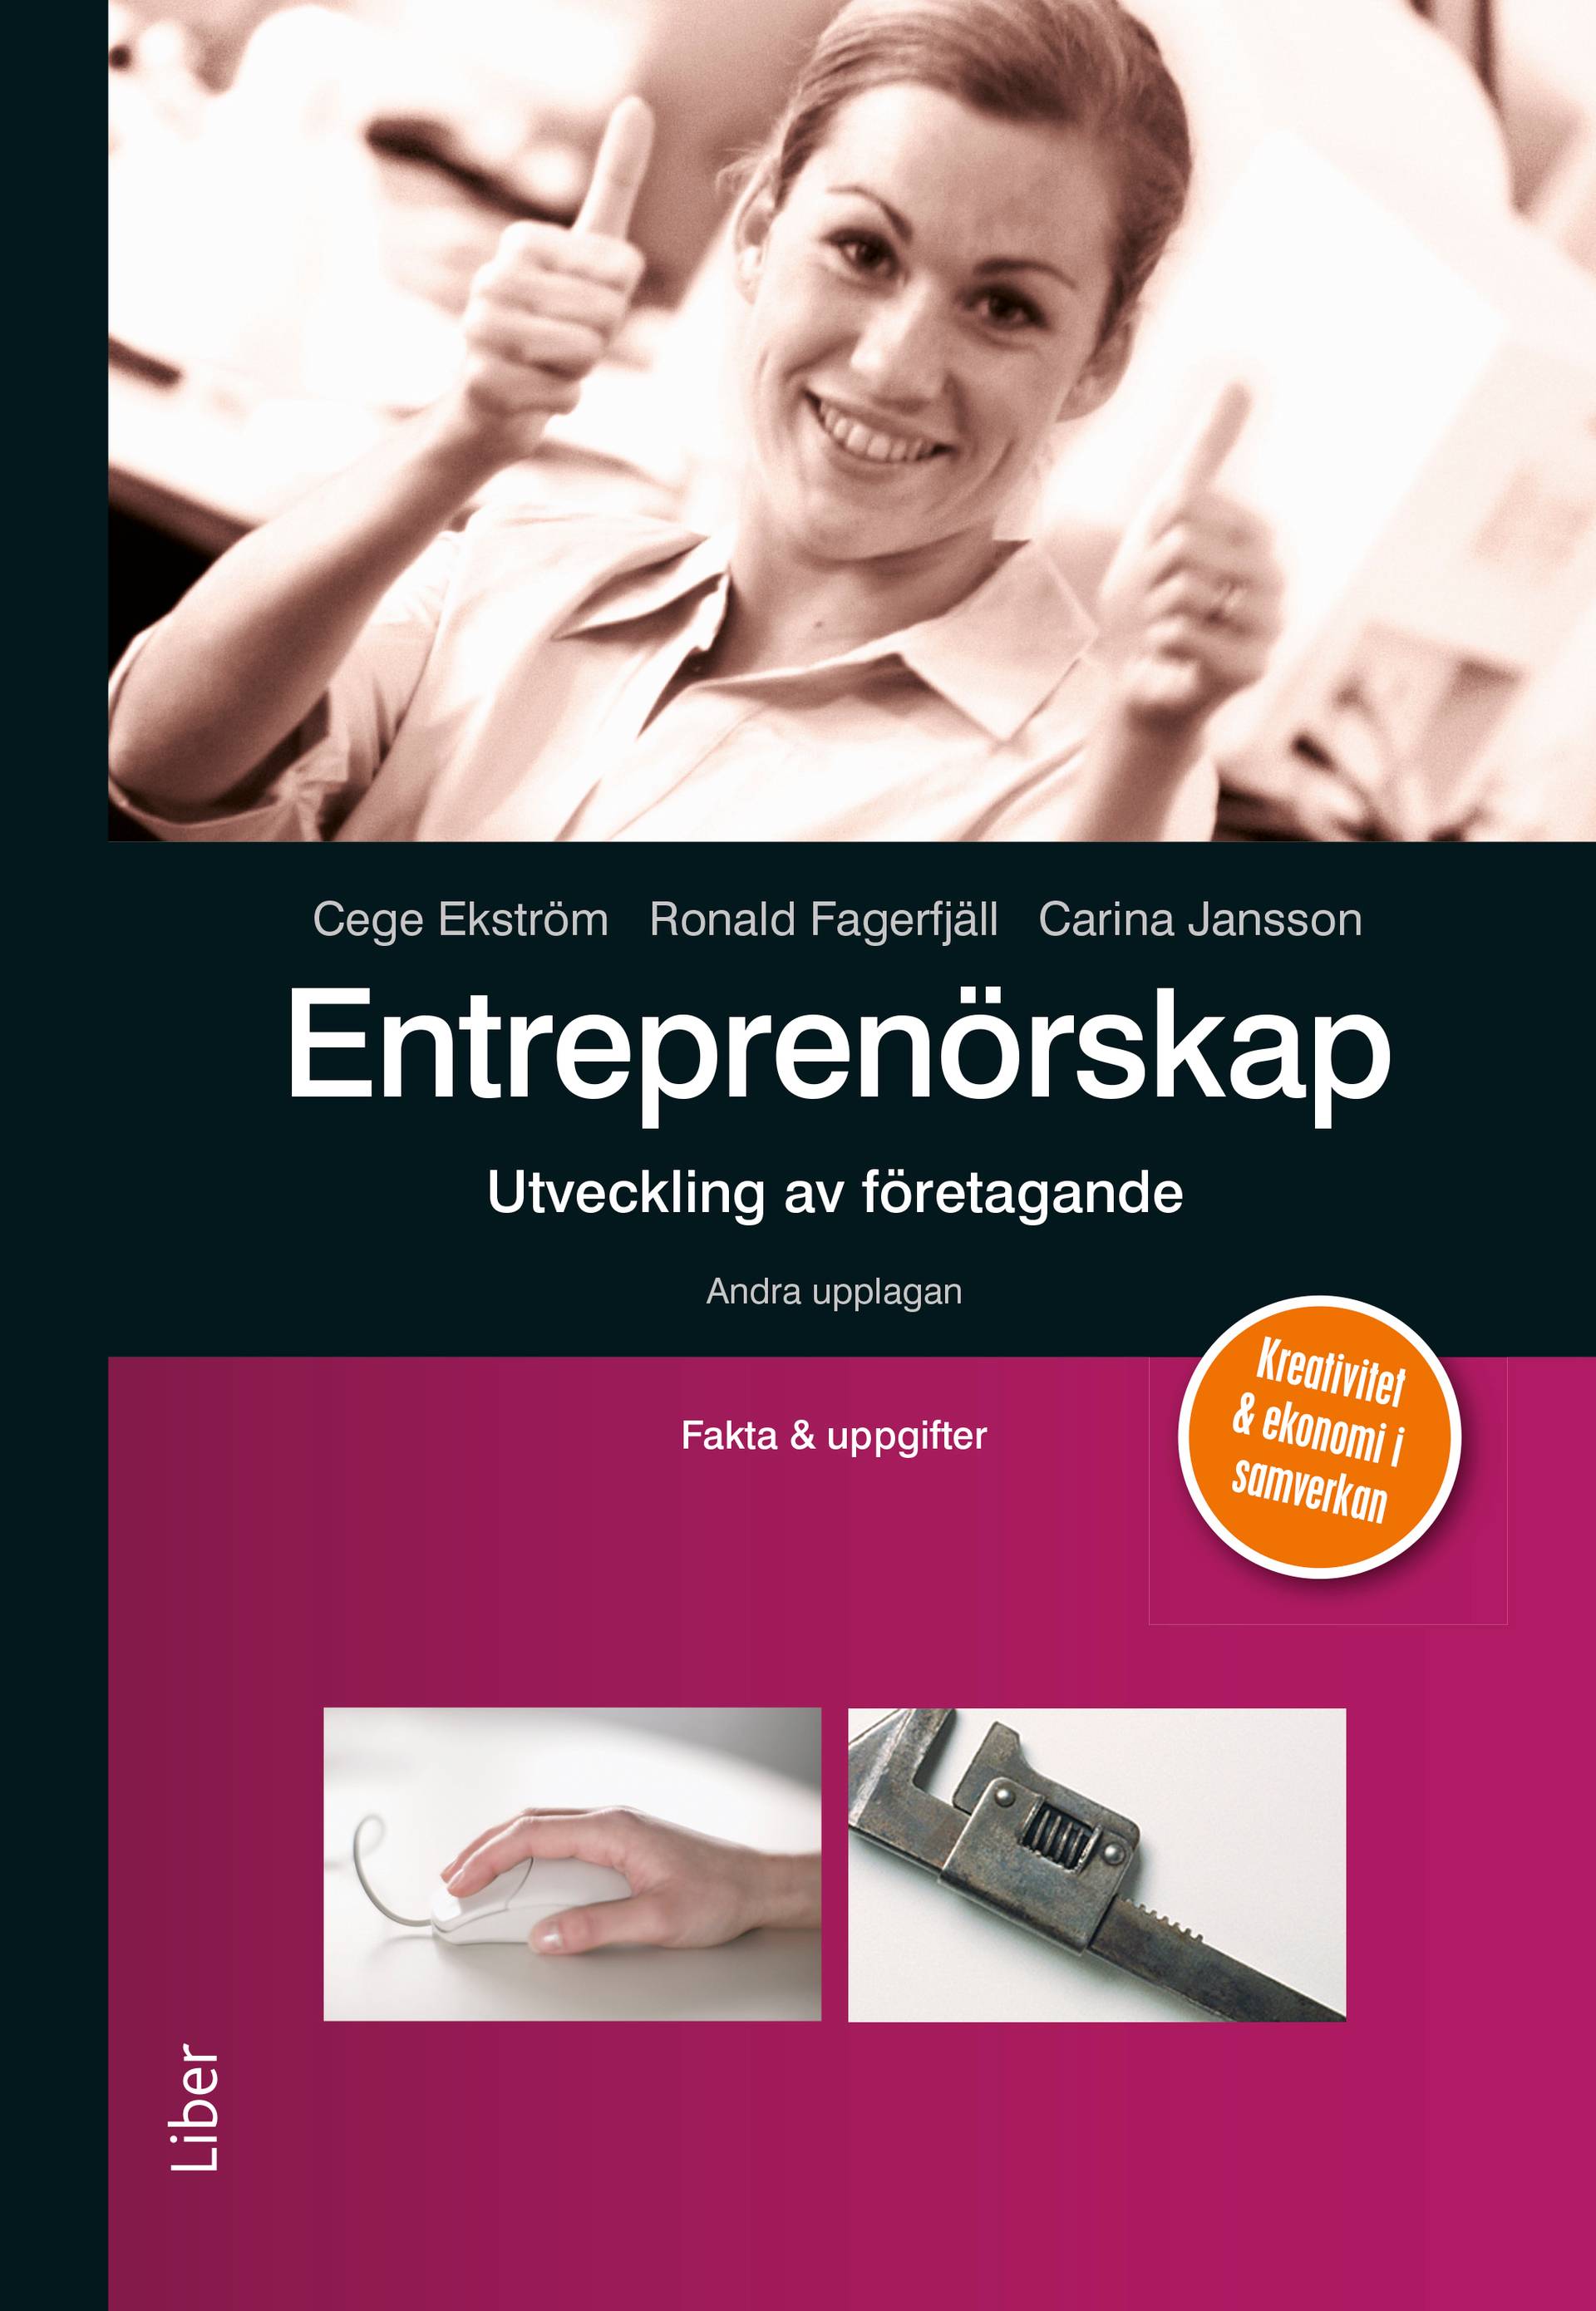 Entreprenörskap - utveckling av företagande Fakta och uppgifter